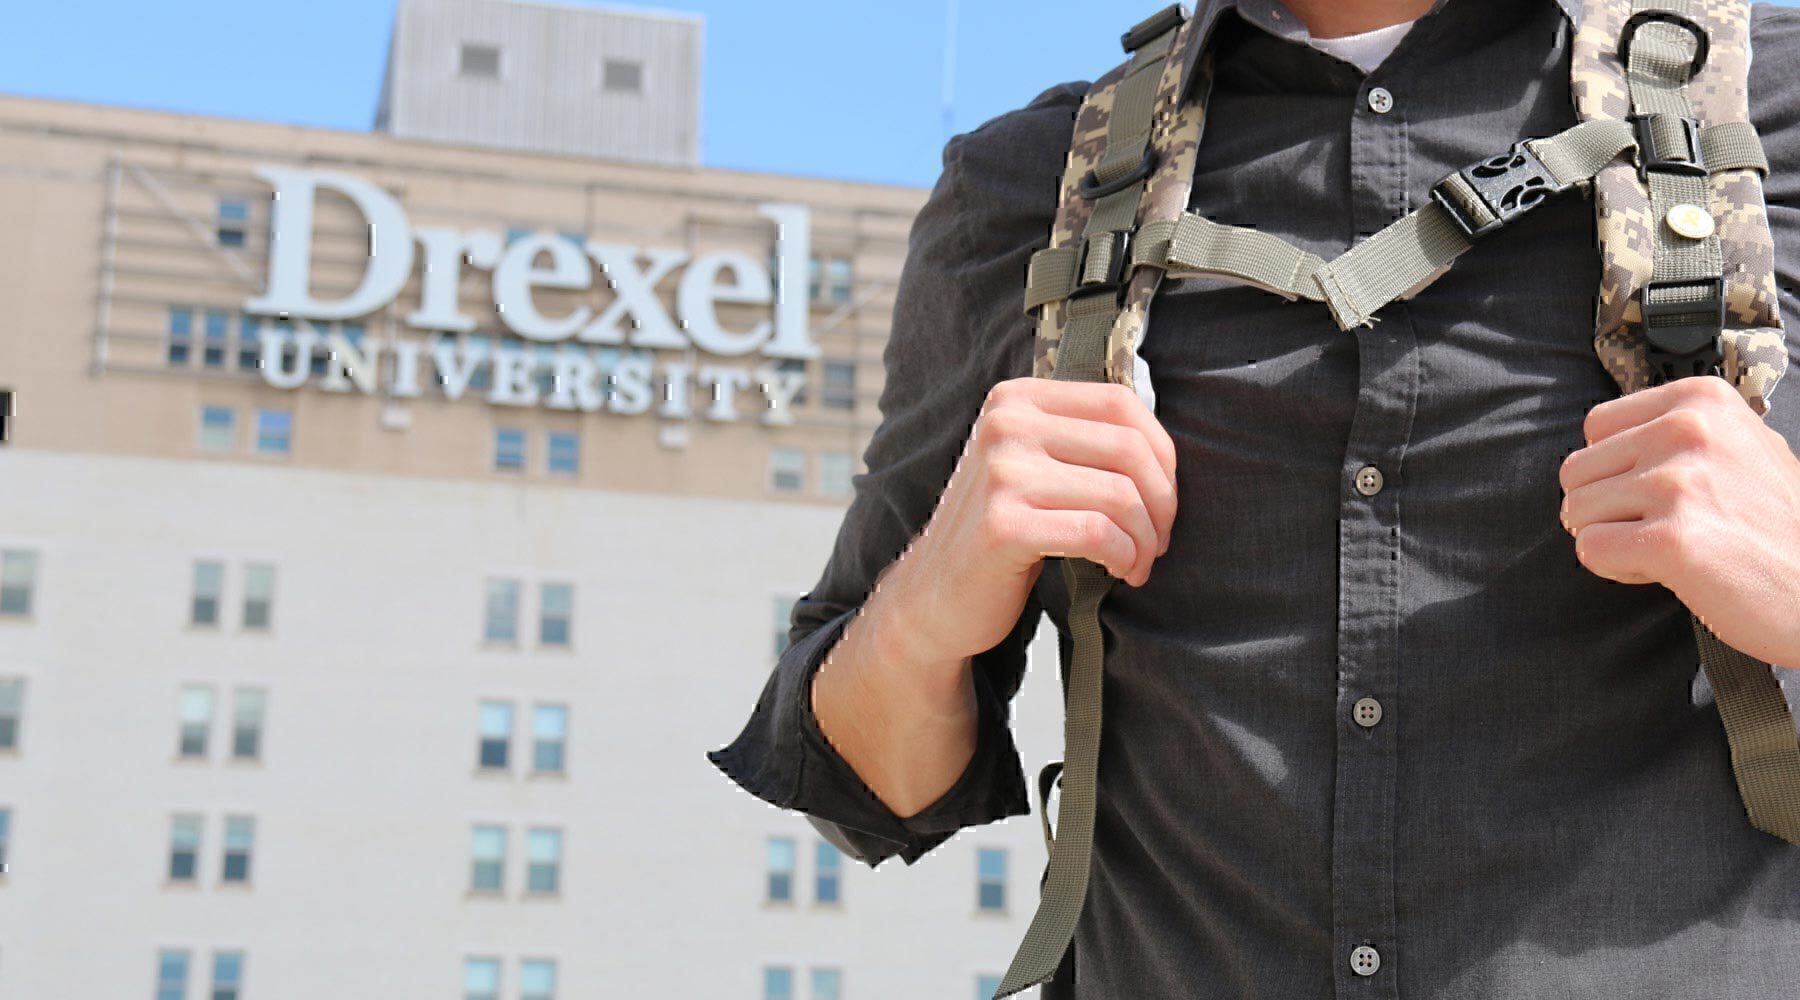 Drexel Sponsored school for veterans